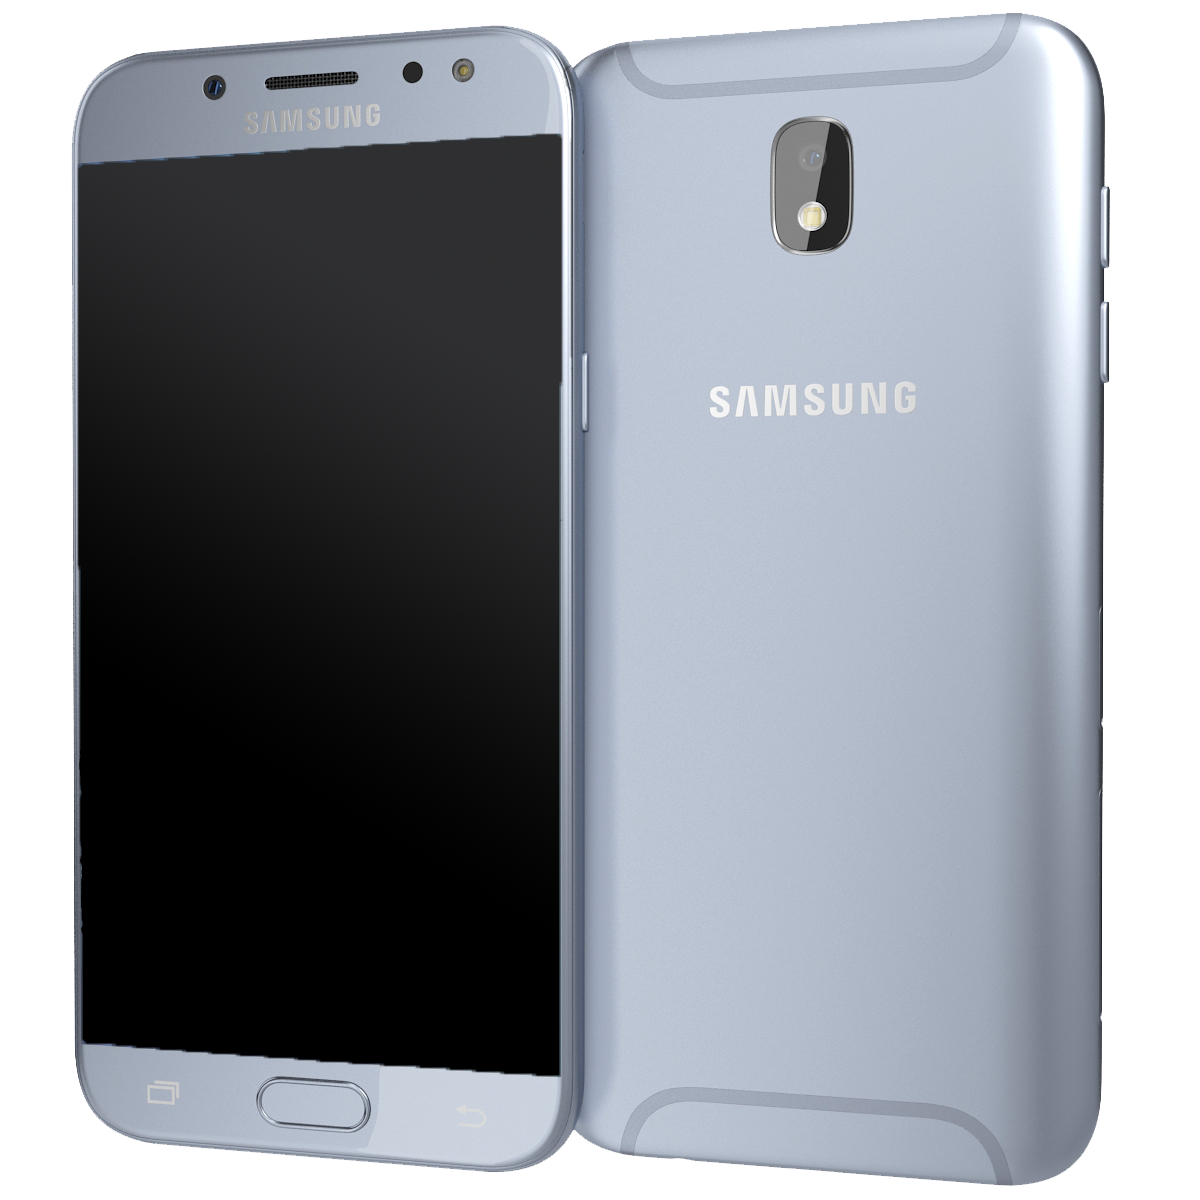 Samsung Galaxy J5 (2017) J530 Dual-SIM blau - Ohne Vertrag